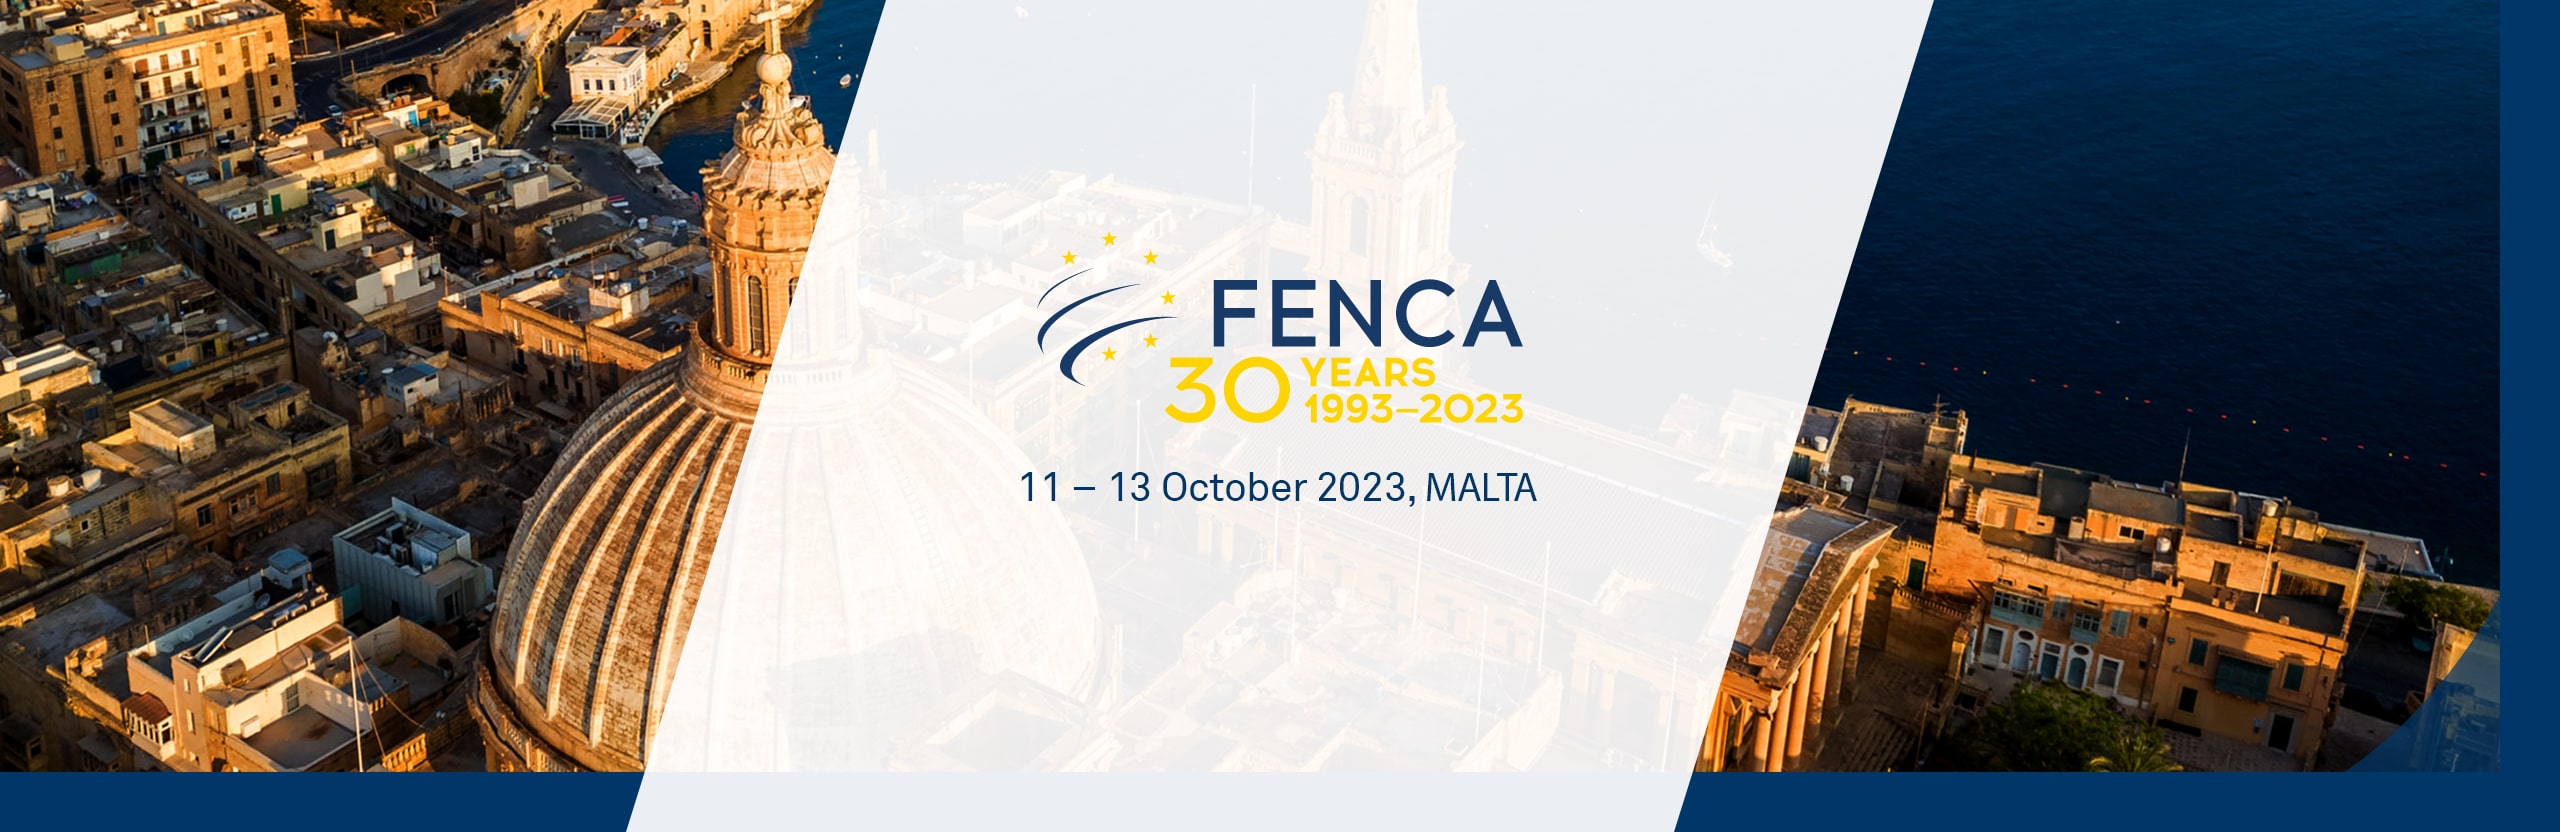 fenca-congress-2023-updated-3